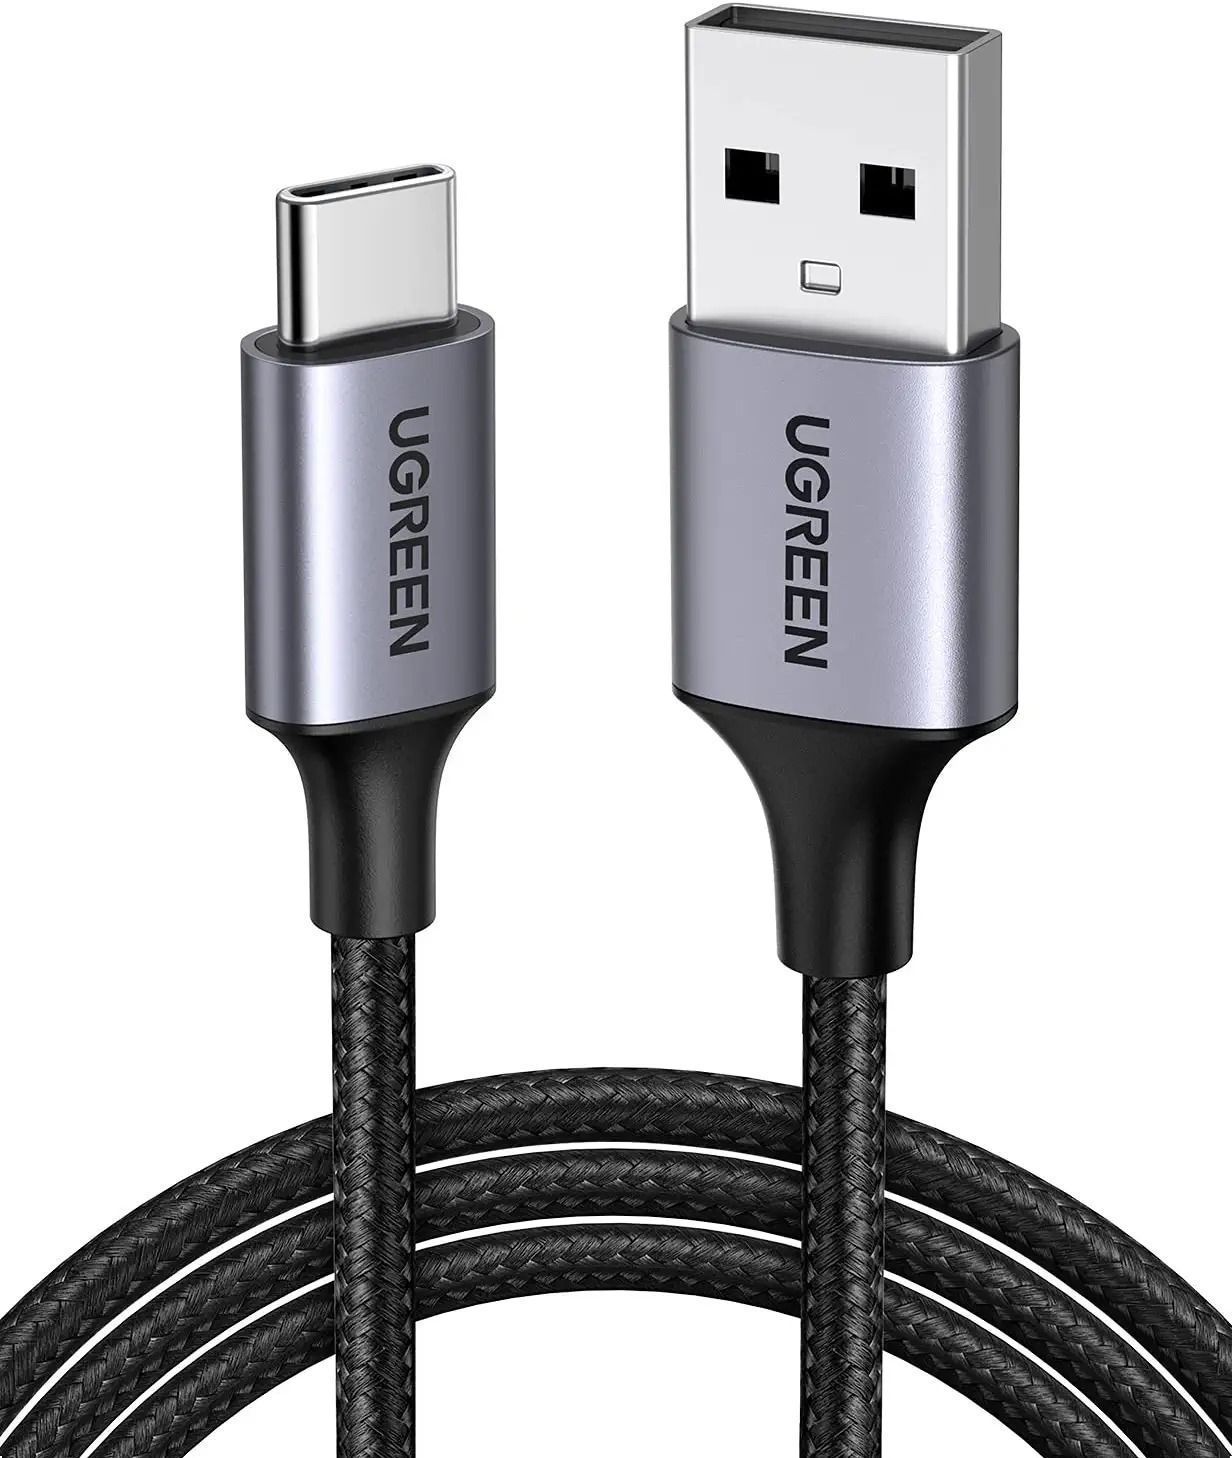 60127 Кабель UGREEN US288 USB 2.0 - USB Type-C, цвет: черный, 1.5M